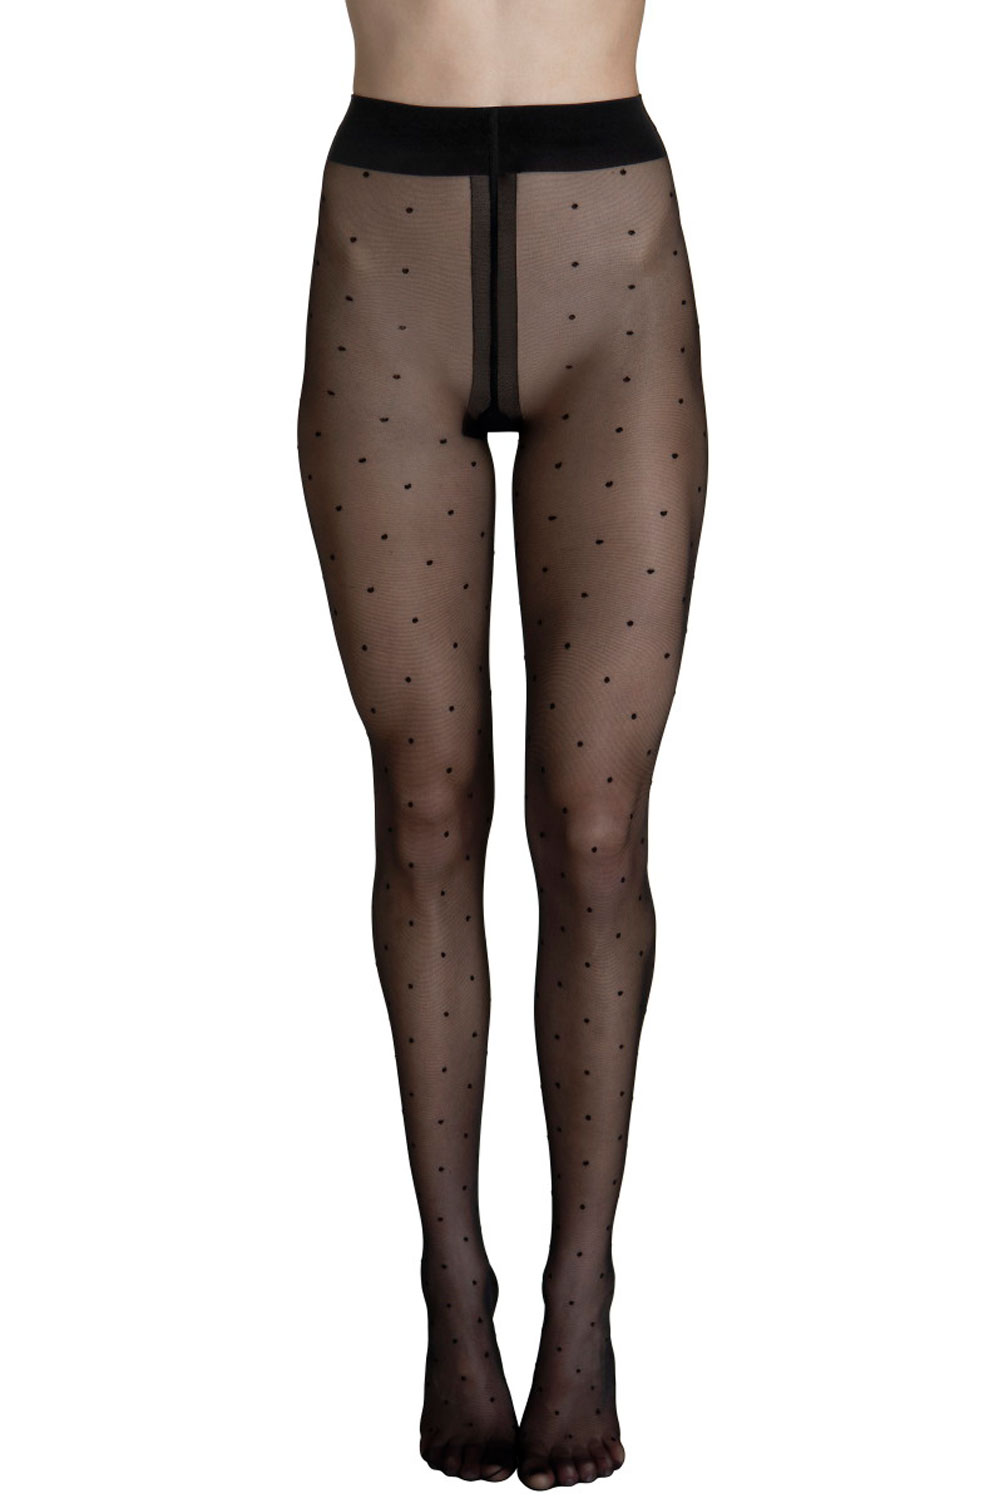 Lisca Fashion Dot 20 Strumpfhose mit Tupfen Socks and tights 42 schwarz günstig online kaufen